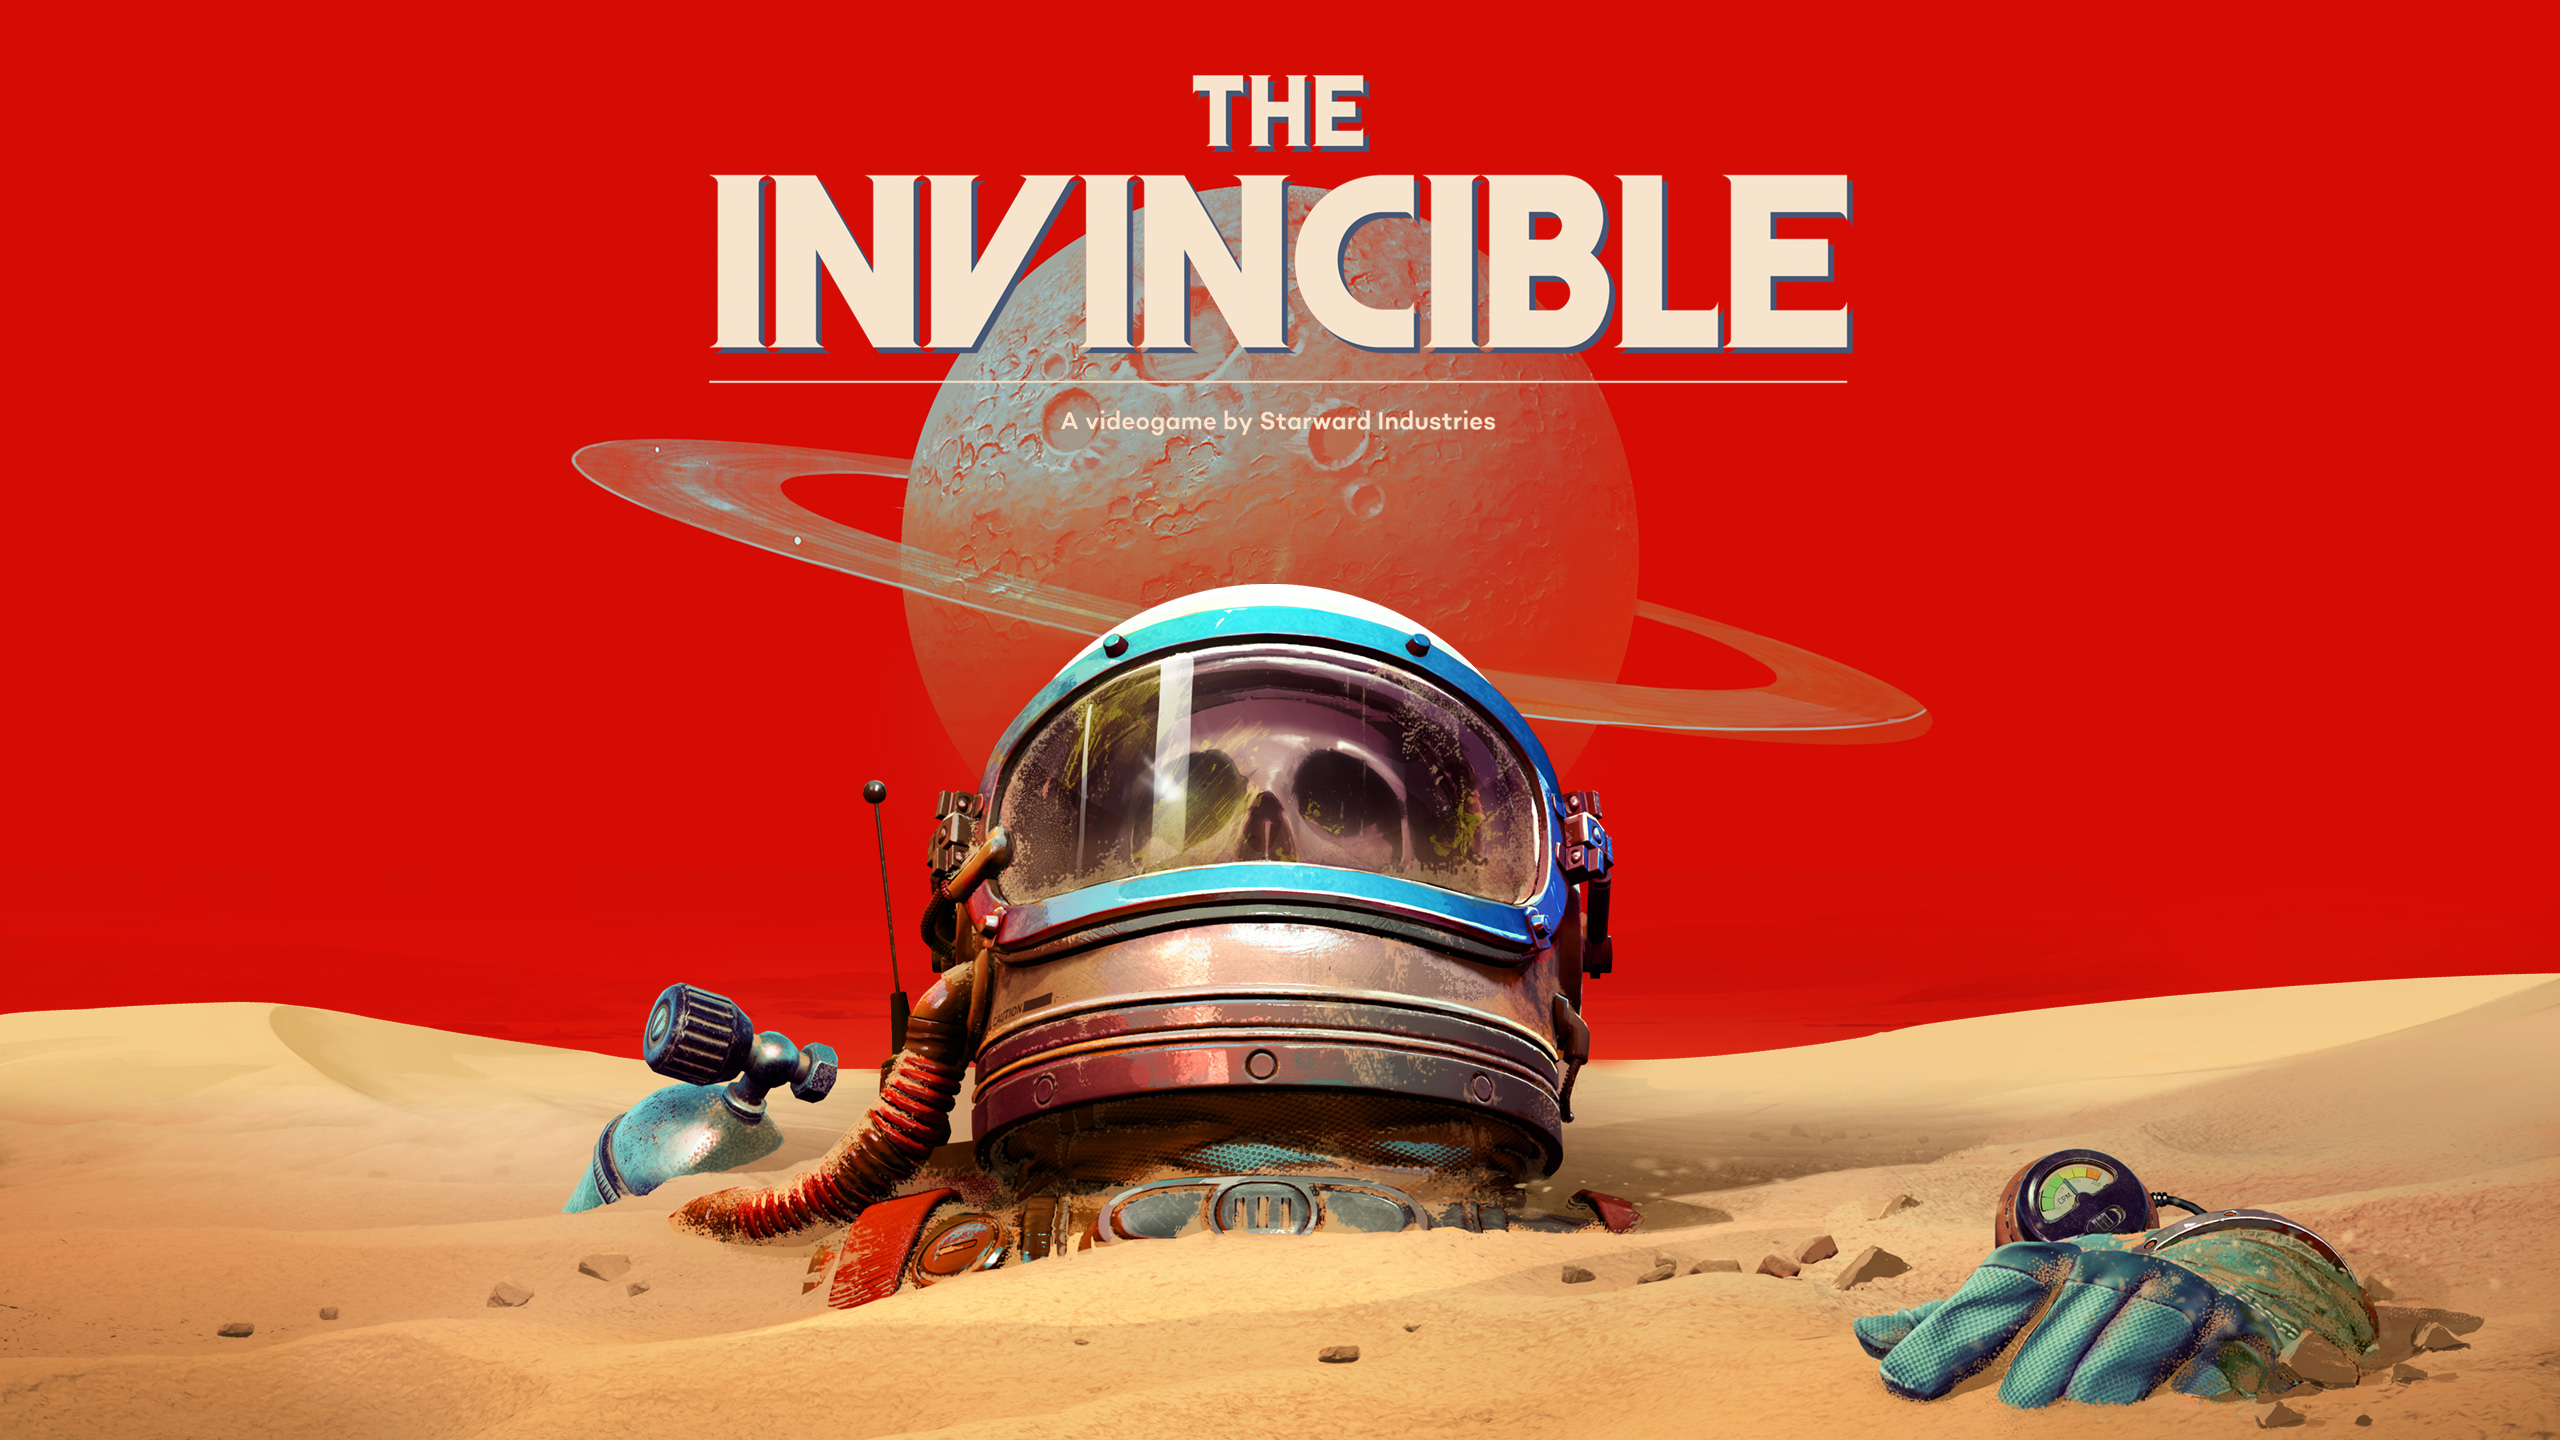 Sprzedaż The Invincible przekroczyła 123 tysiące egzemplarzy - twórcy dziękują graczom za zainteresowanie ich grą